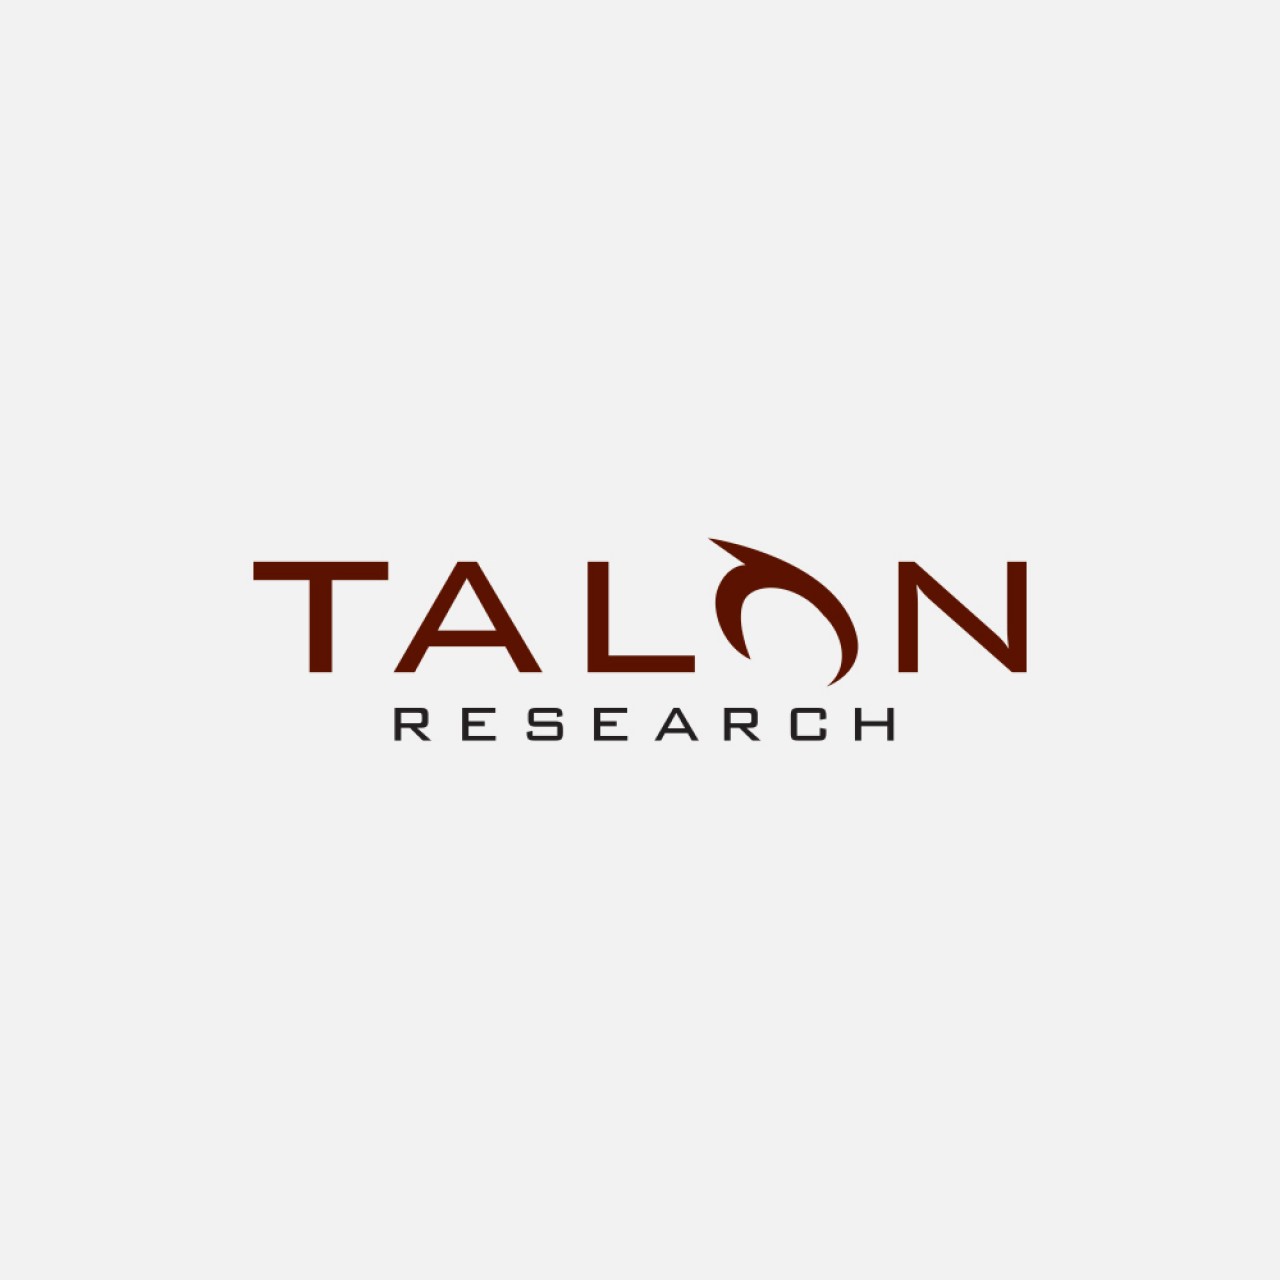 Talon Research logo